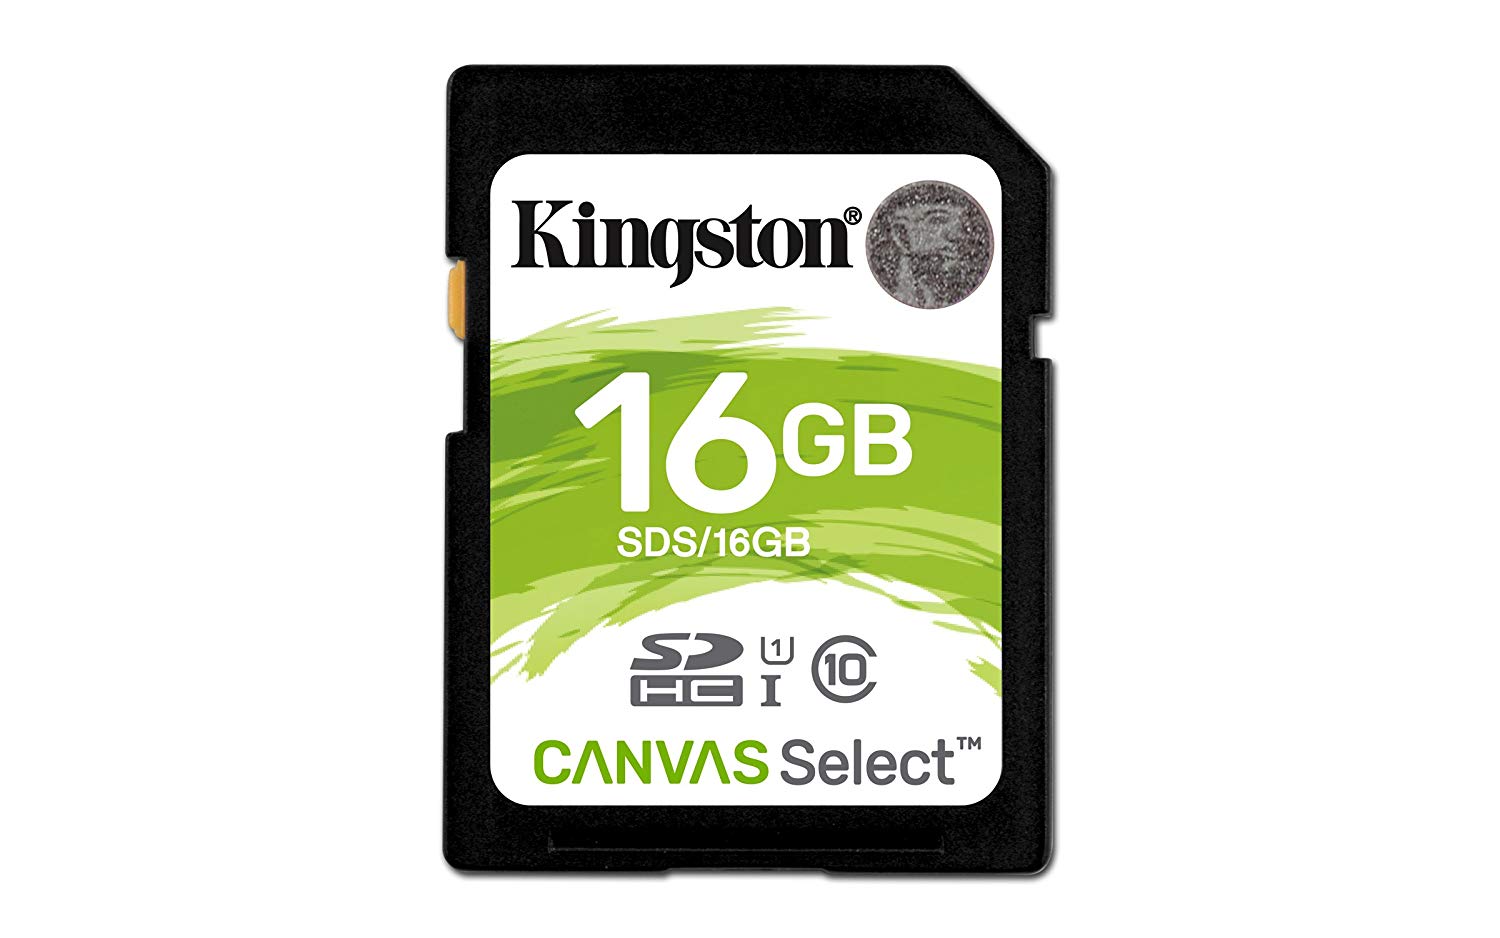 Kingston Canvas Select 16GB SDHC Class 10 Tarjeta de memoria SD UHS-I 80MB / s R Tarjeta de memoria flash (SDS / 16GB)